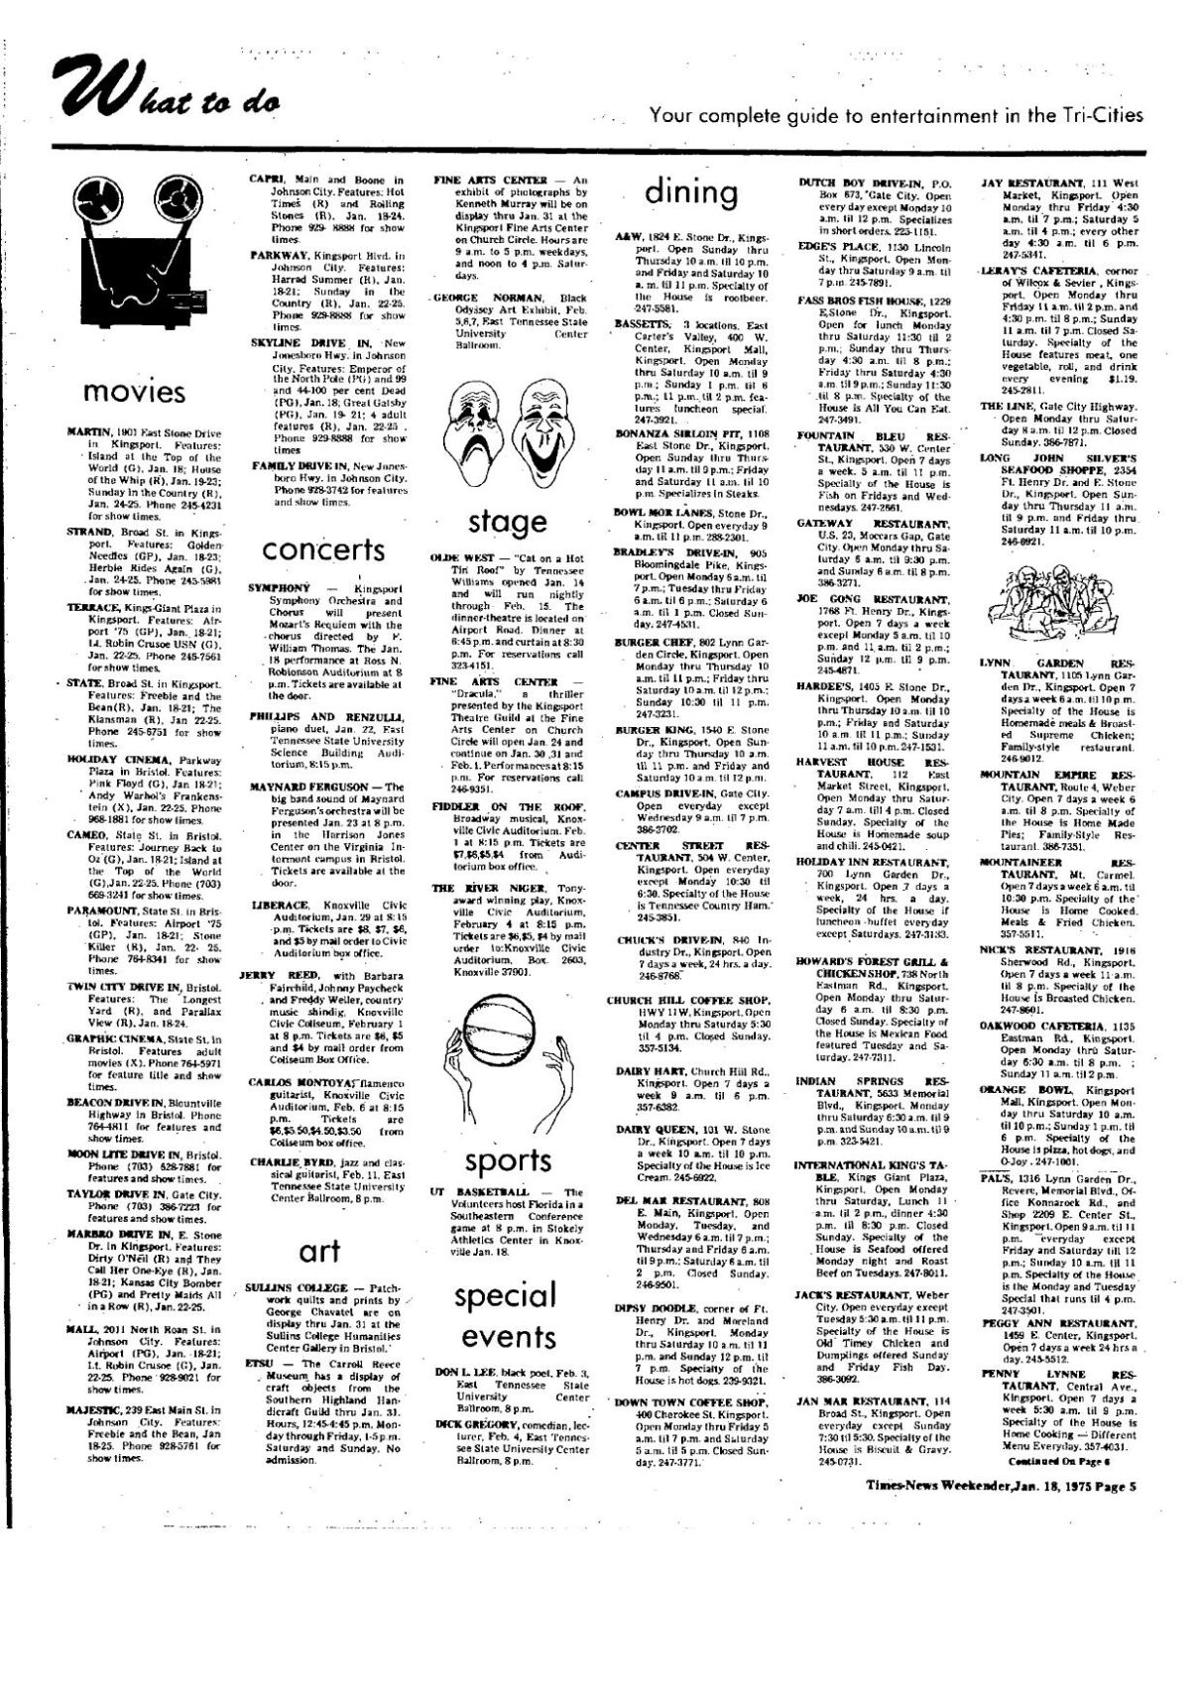 Weekender "Dining" list 1975